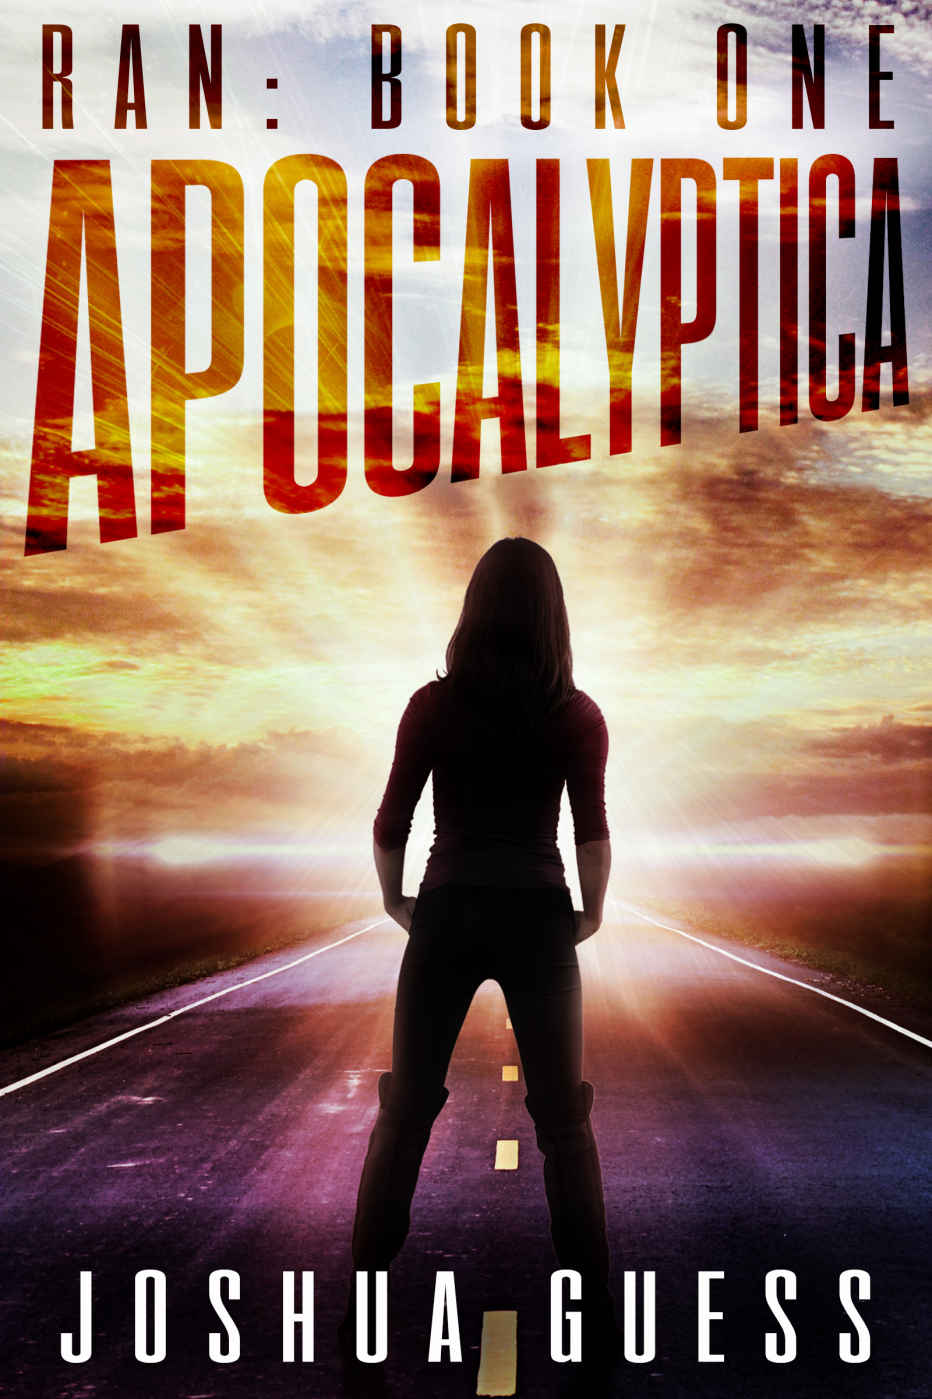 Apocalyptica (Ran Book 1)